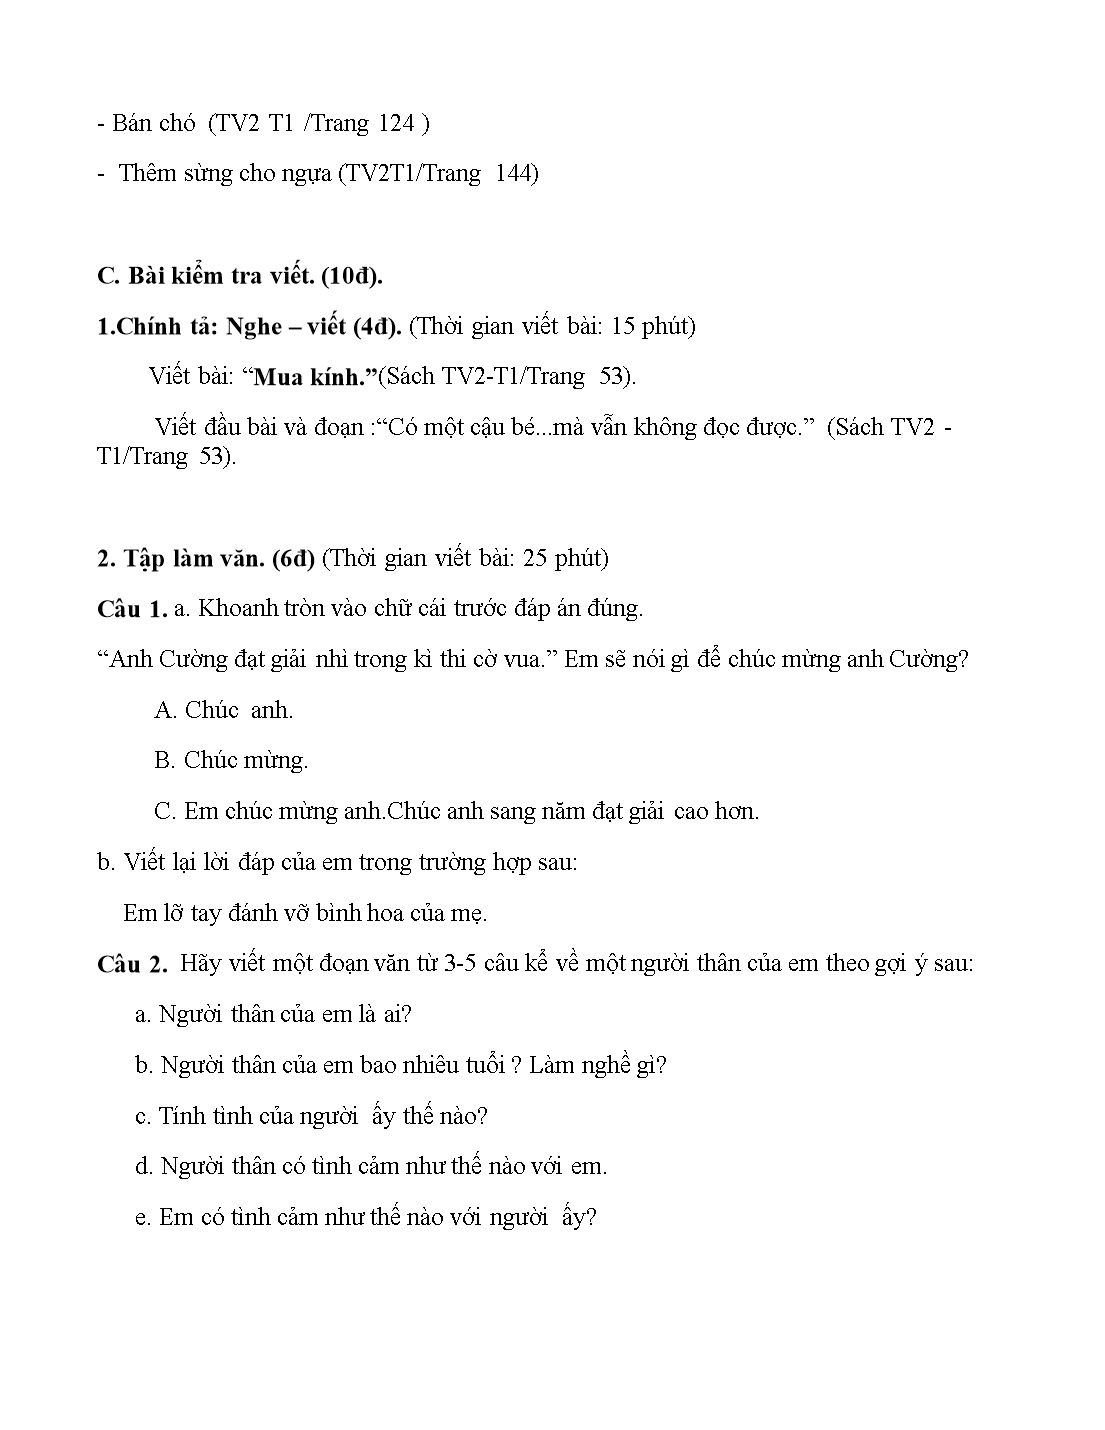 Đề cương ôn tập môn tiếng Việt lớp 2 trang 7